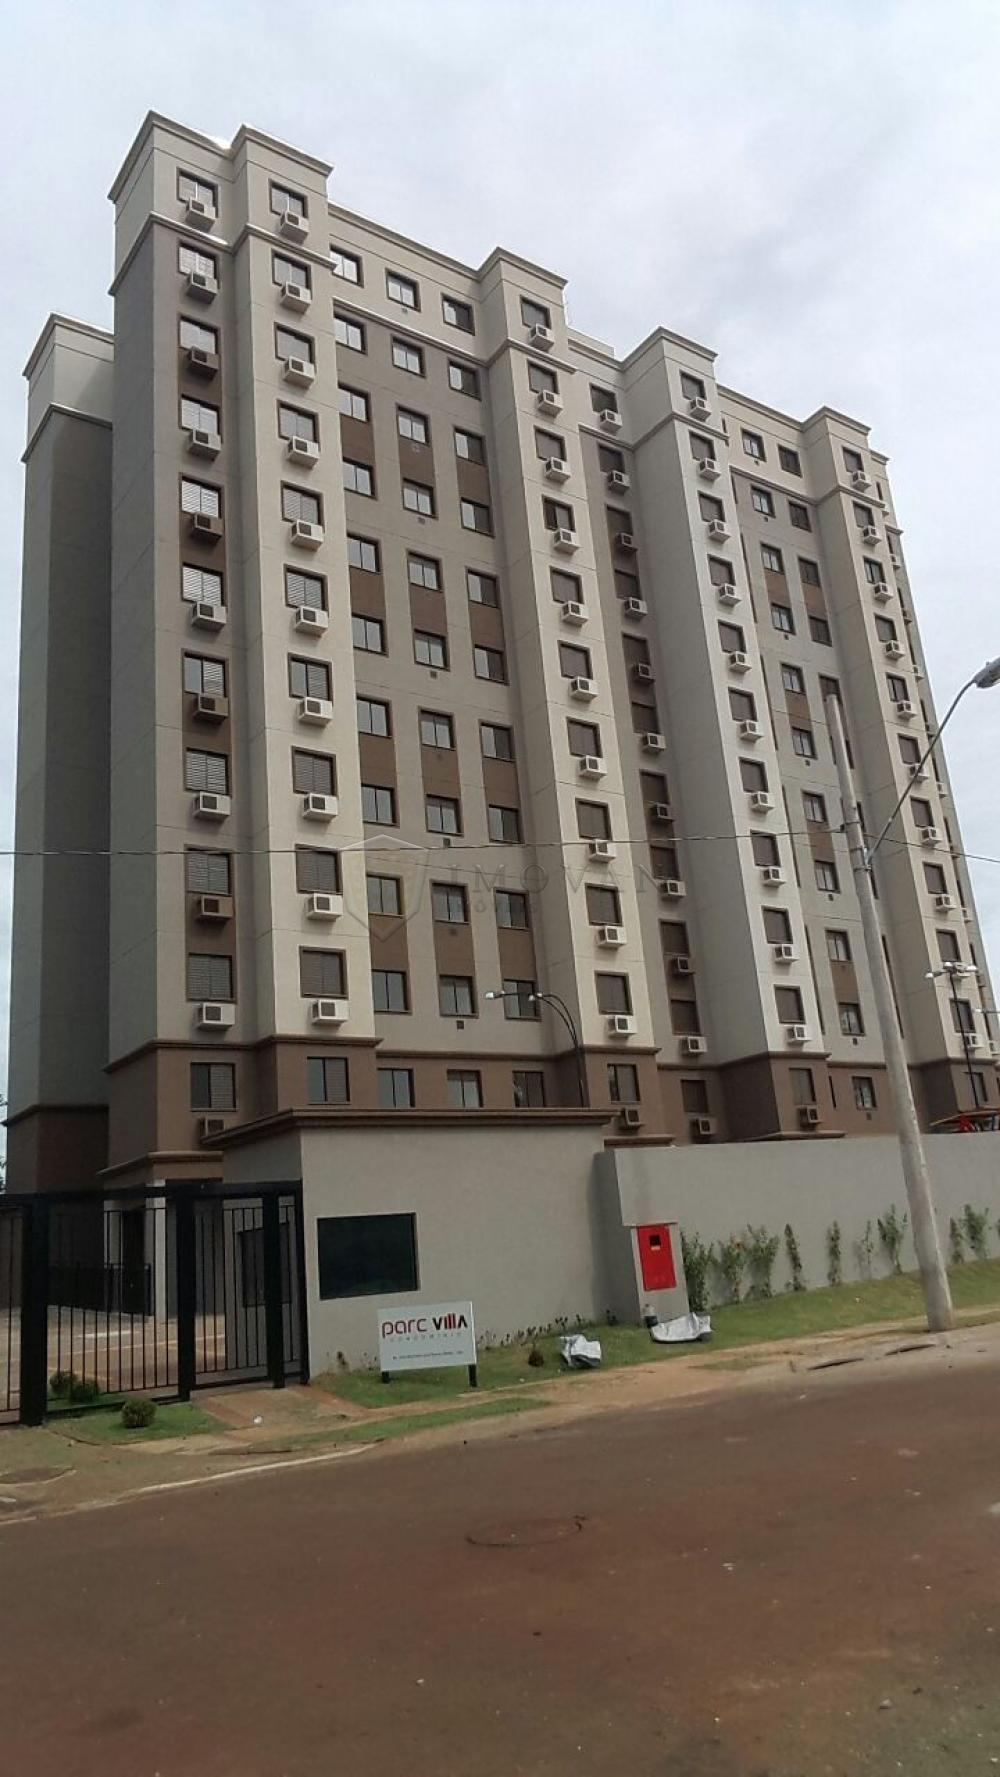 Comprar Apartamento / Padrão em Ribeirão Preto R$ 185.000,00 - Foto 1